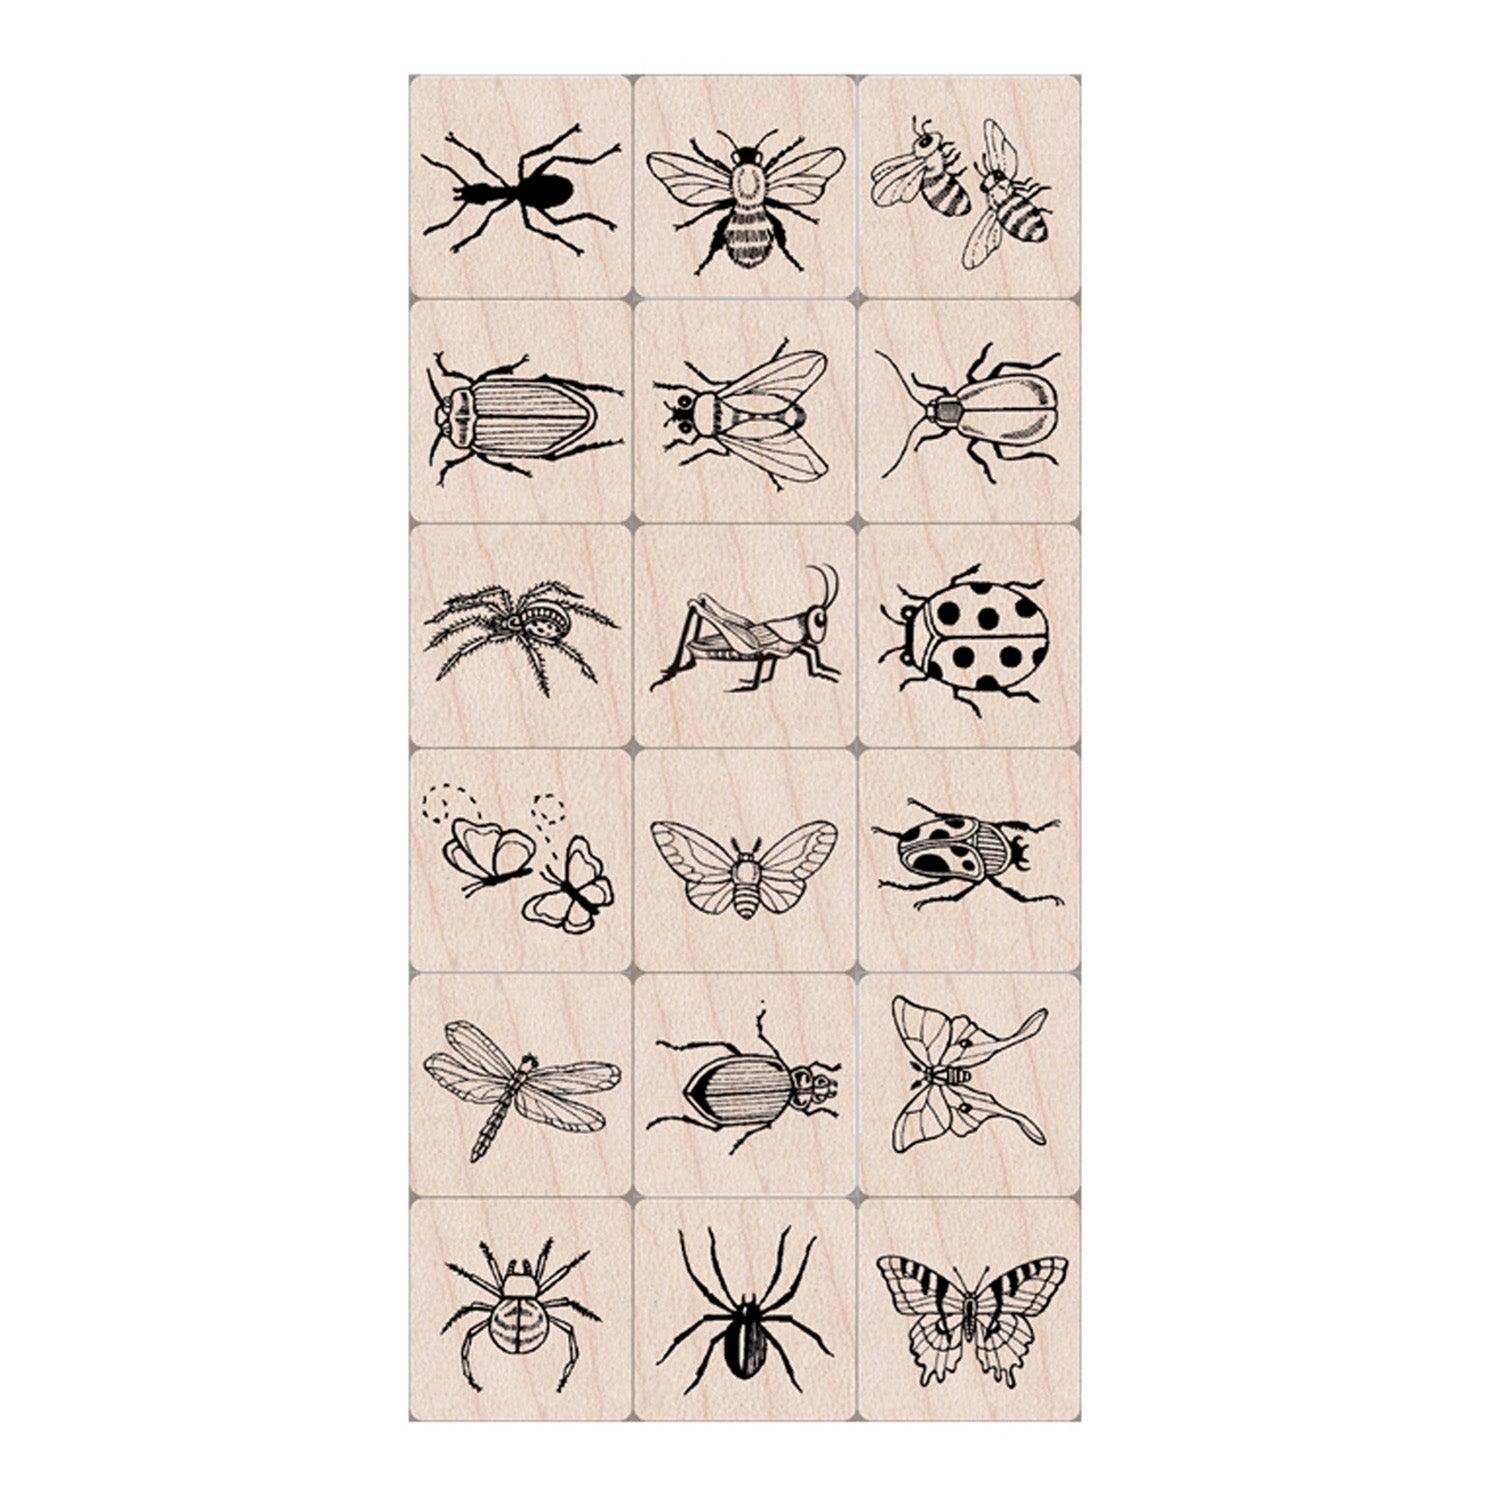 Ink 'n' Stamp Bugs Stamps, Set of 18 - Loomini